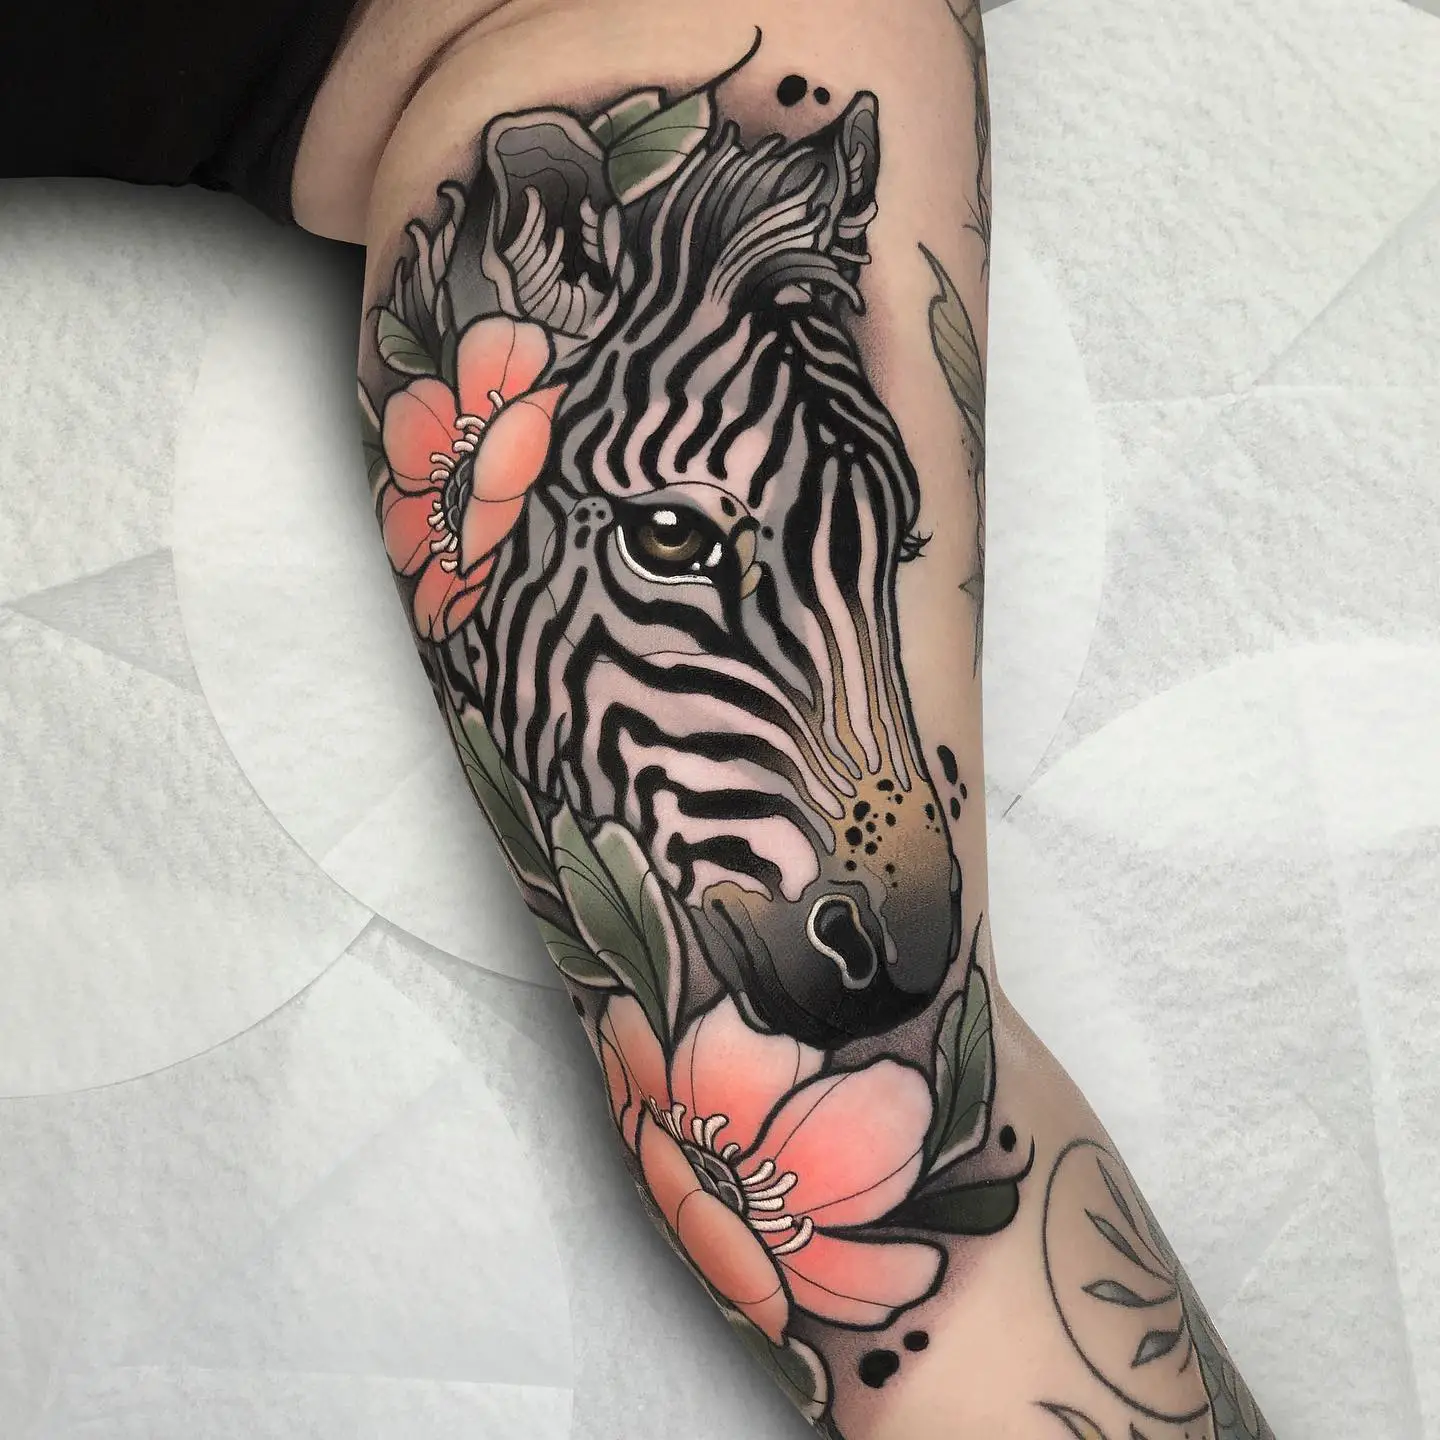 Amazing zebra with flower tattoo by jj.neotraditional